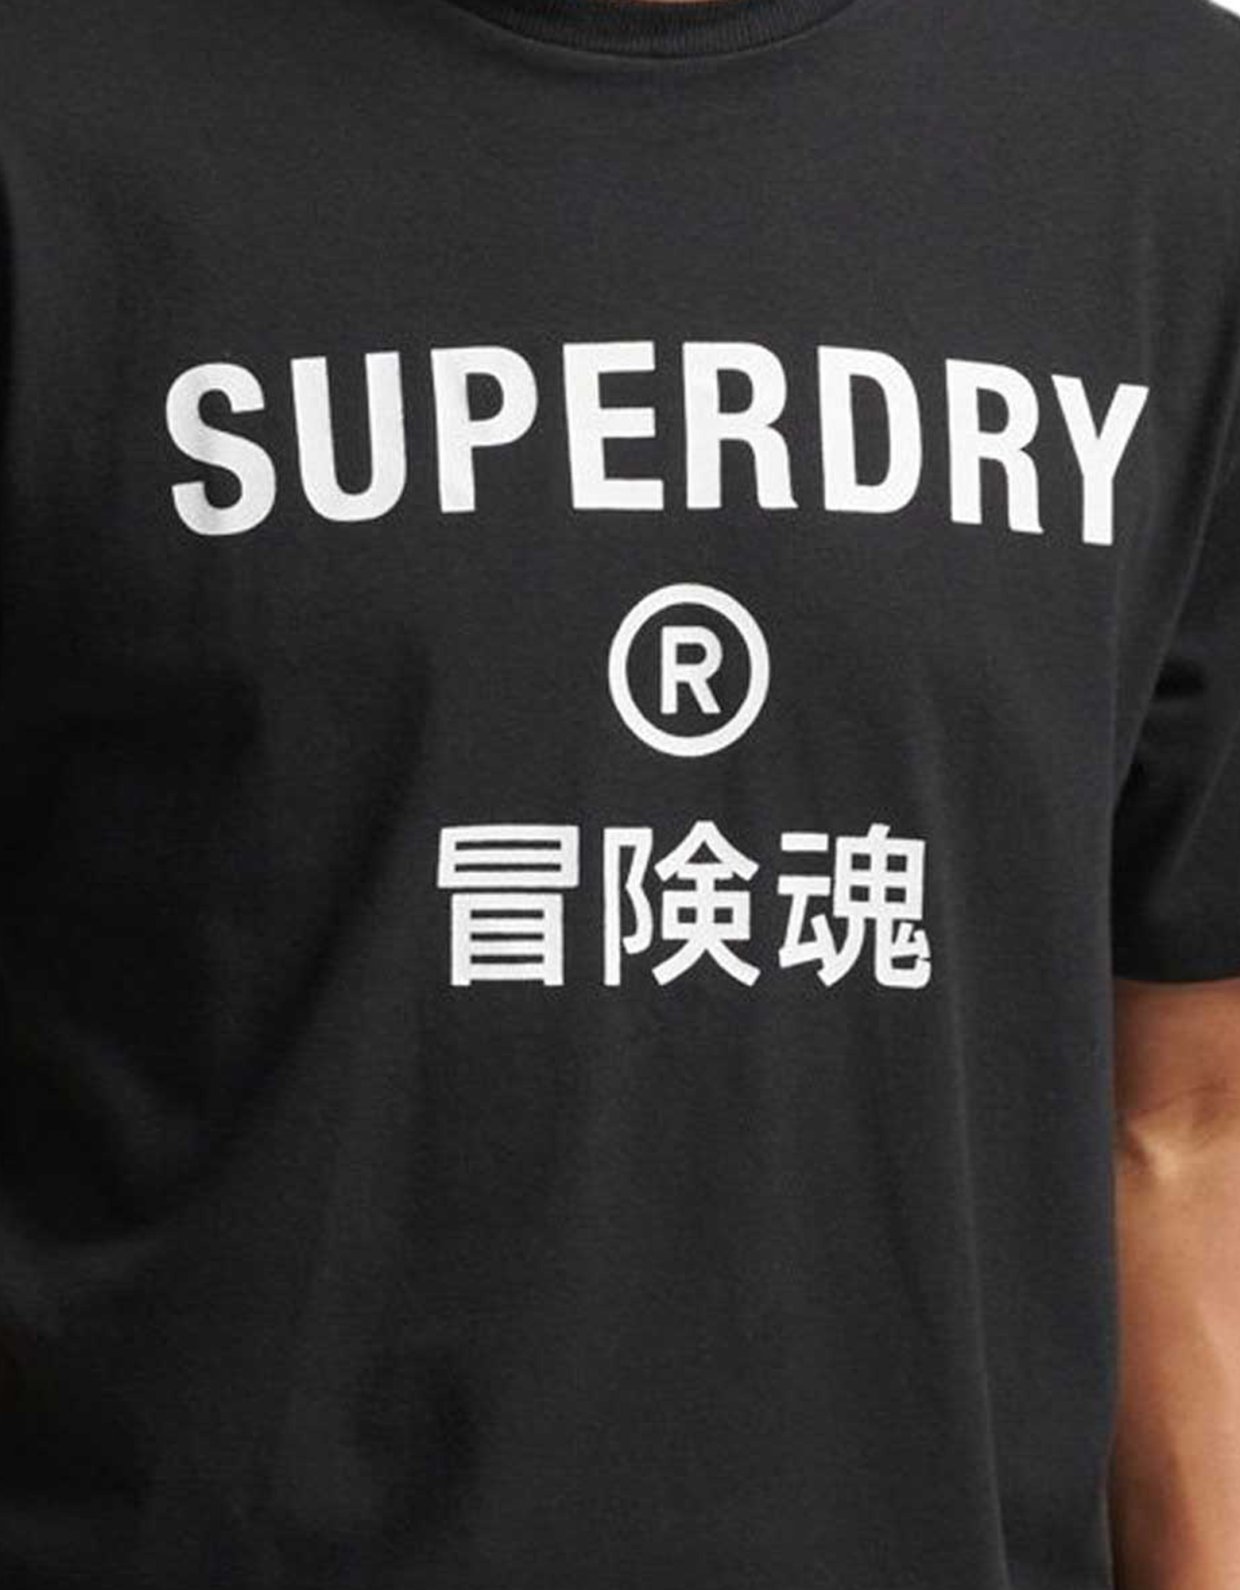 Superdry Code core sport tee black 2